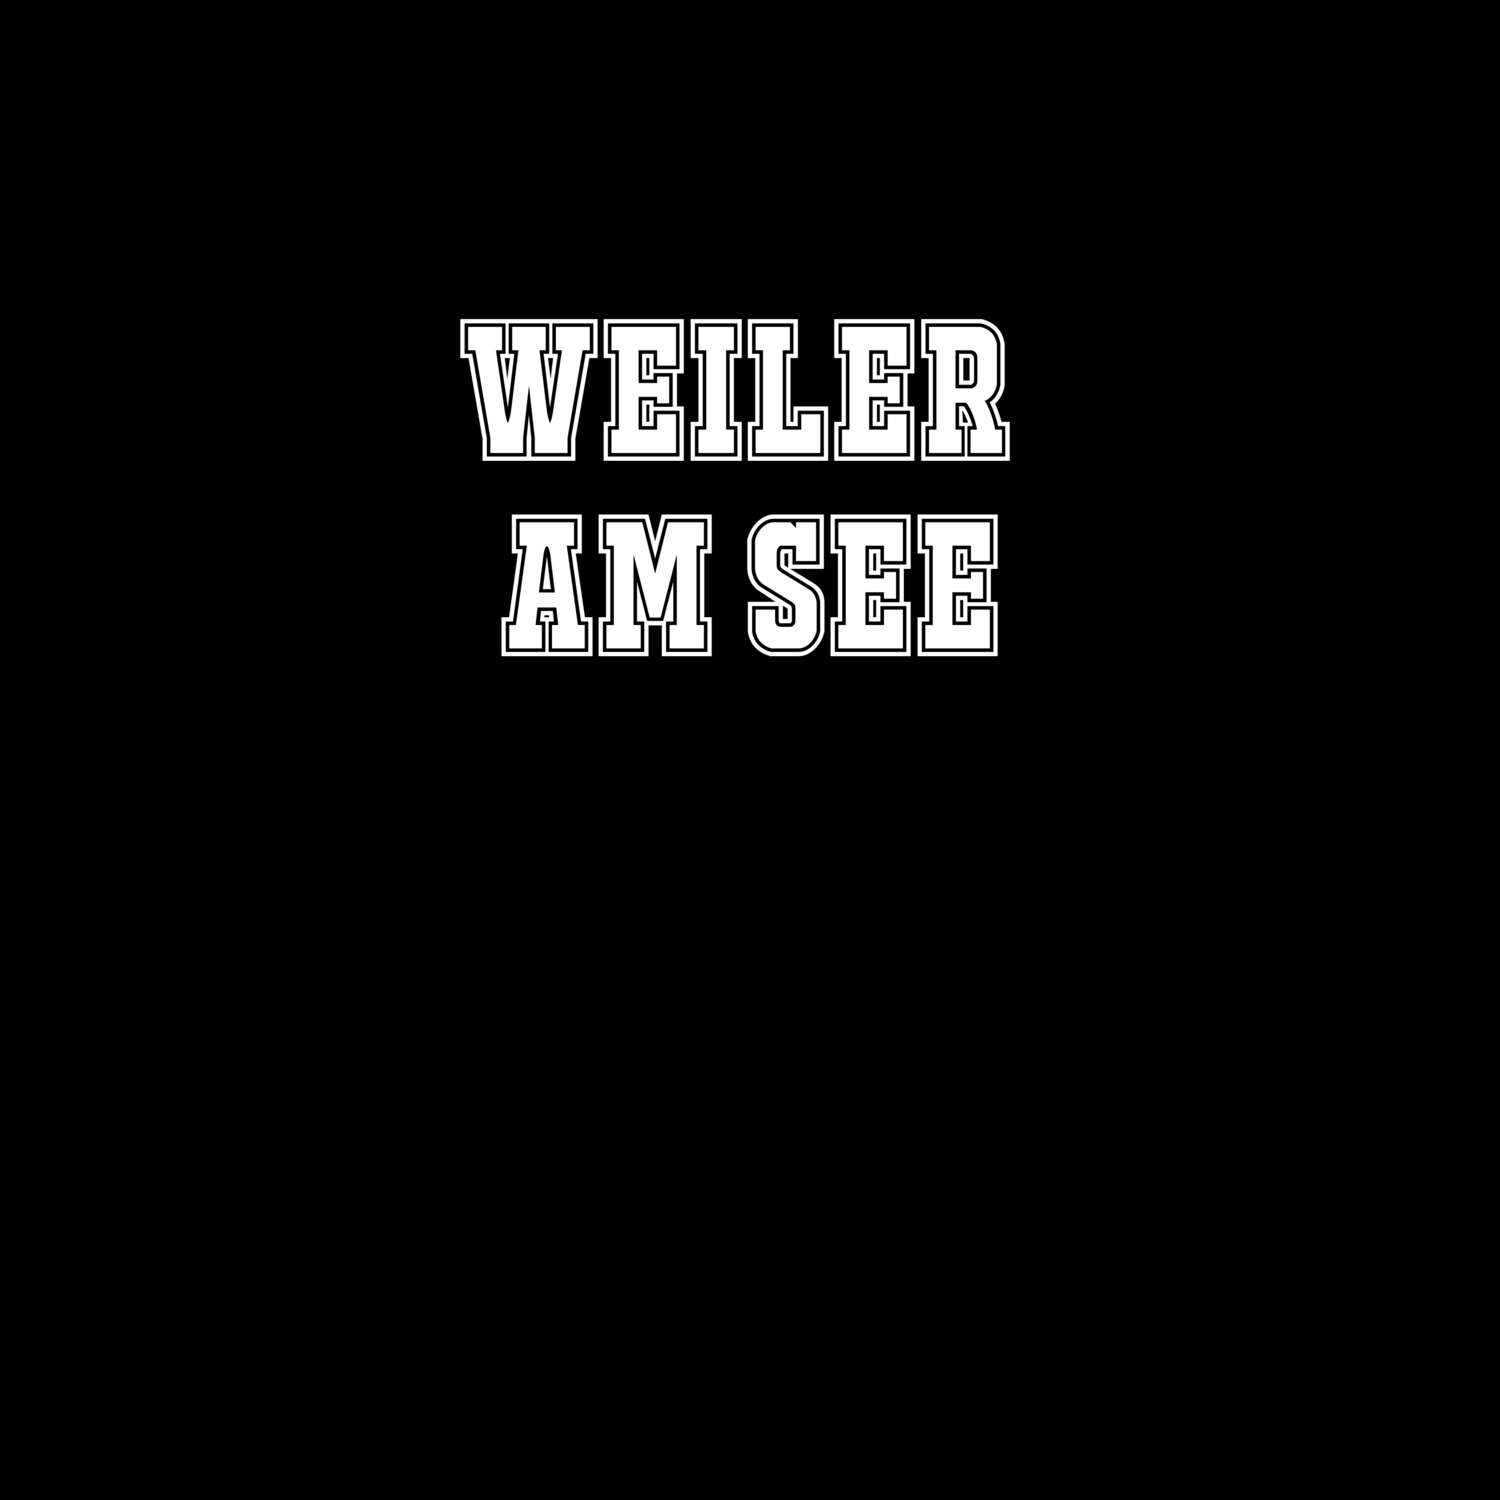 Weiler am See T-Shirt »Classic«